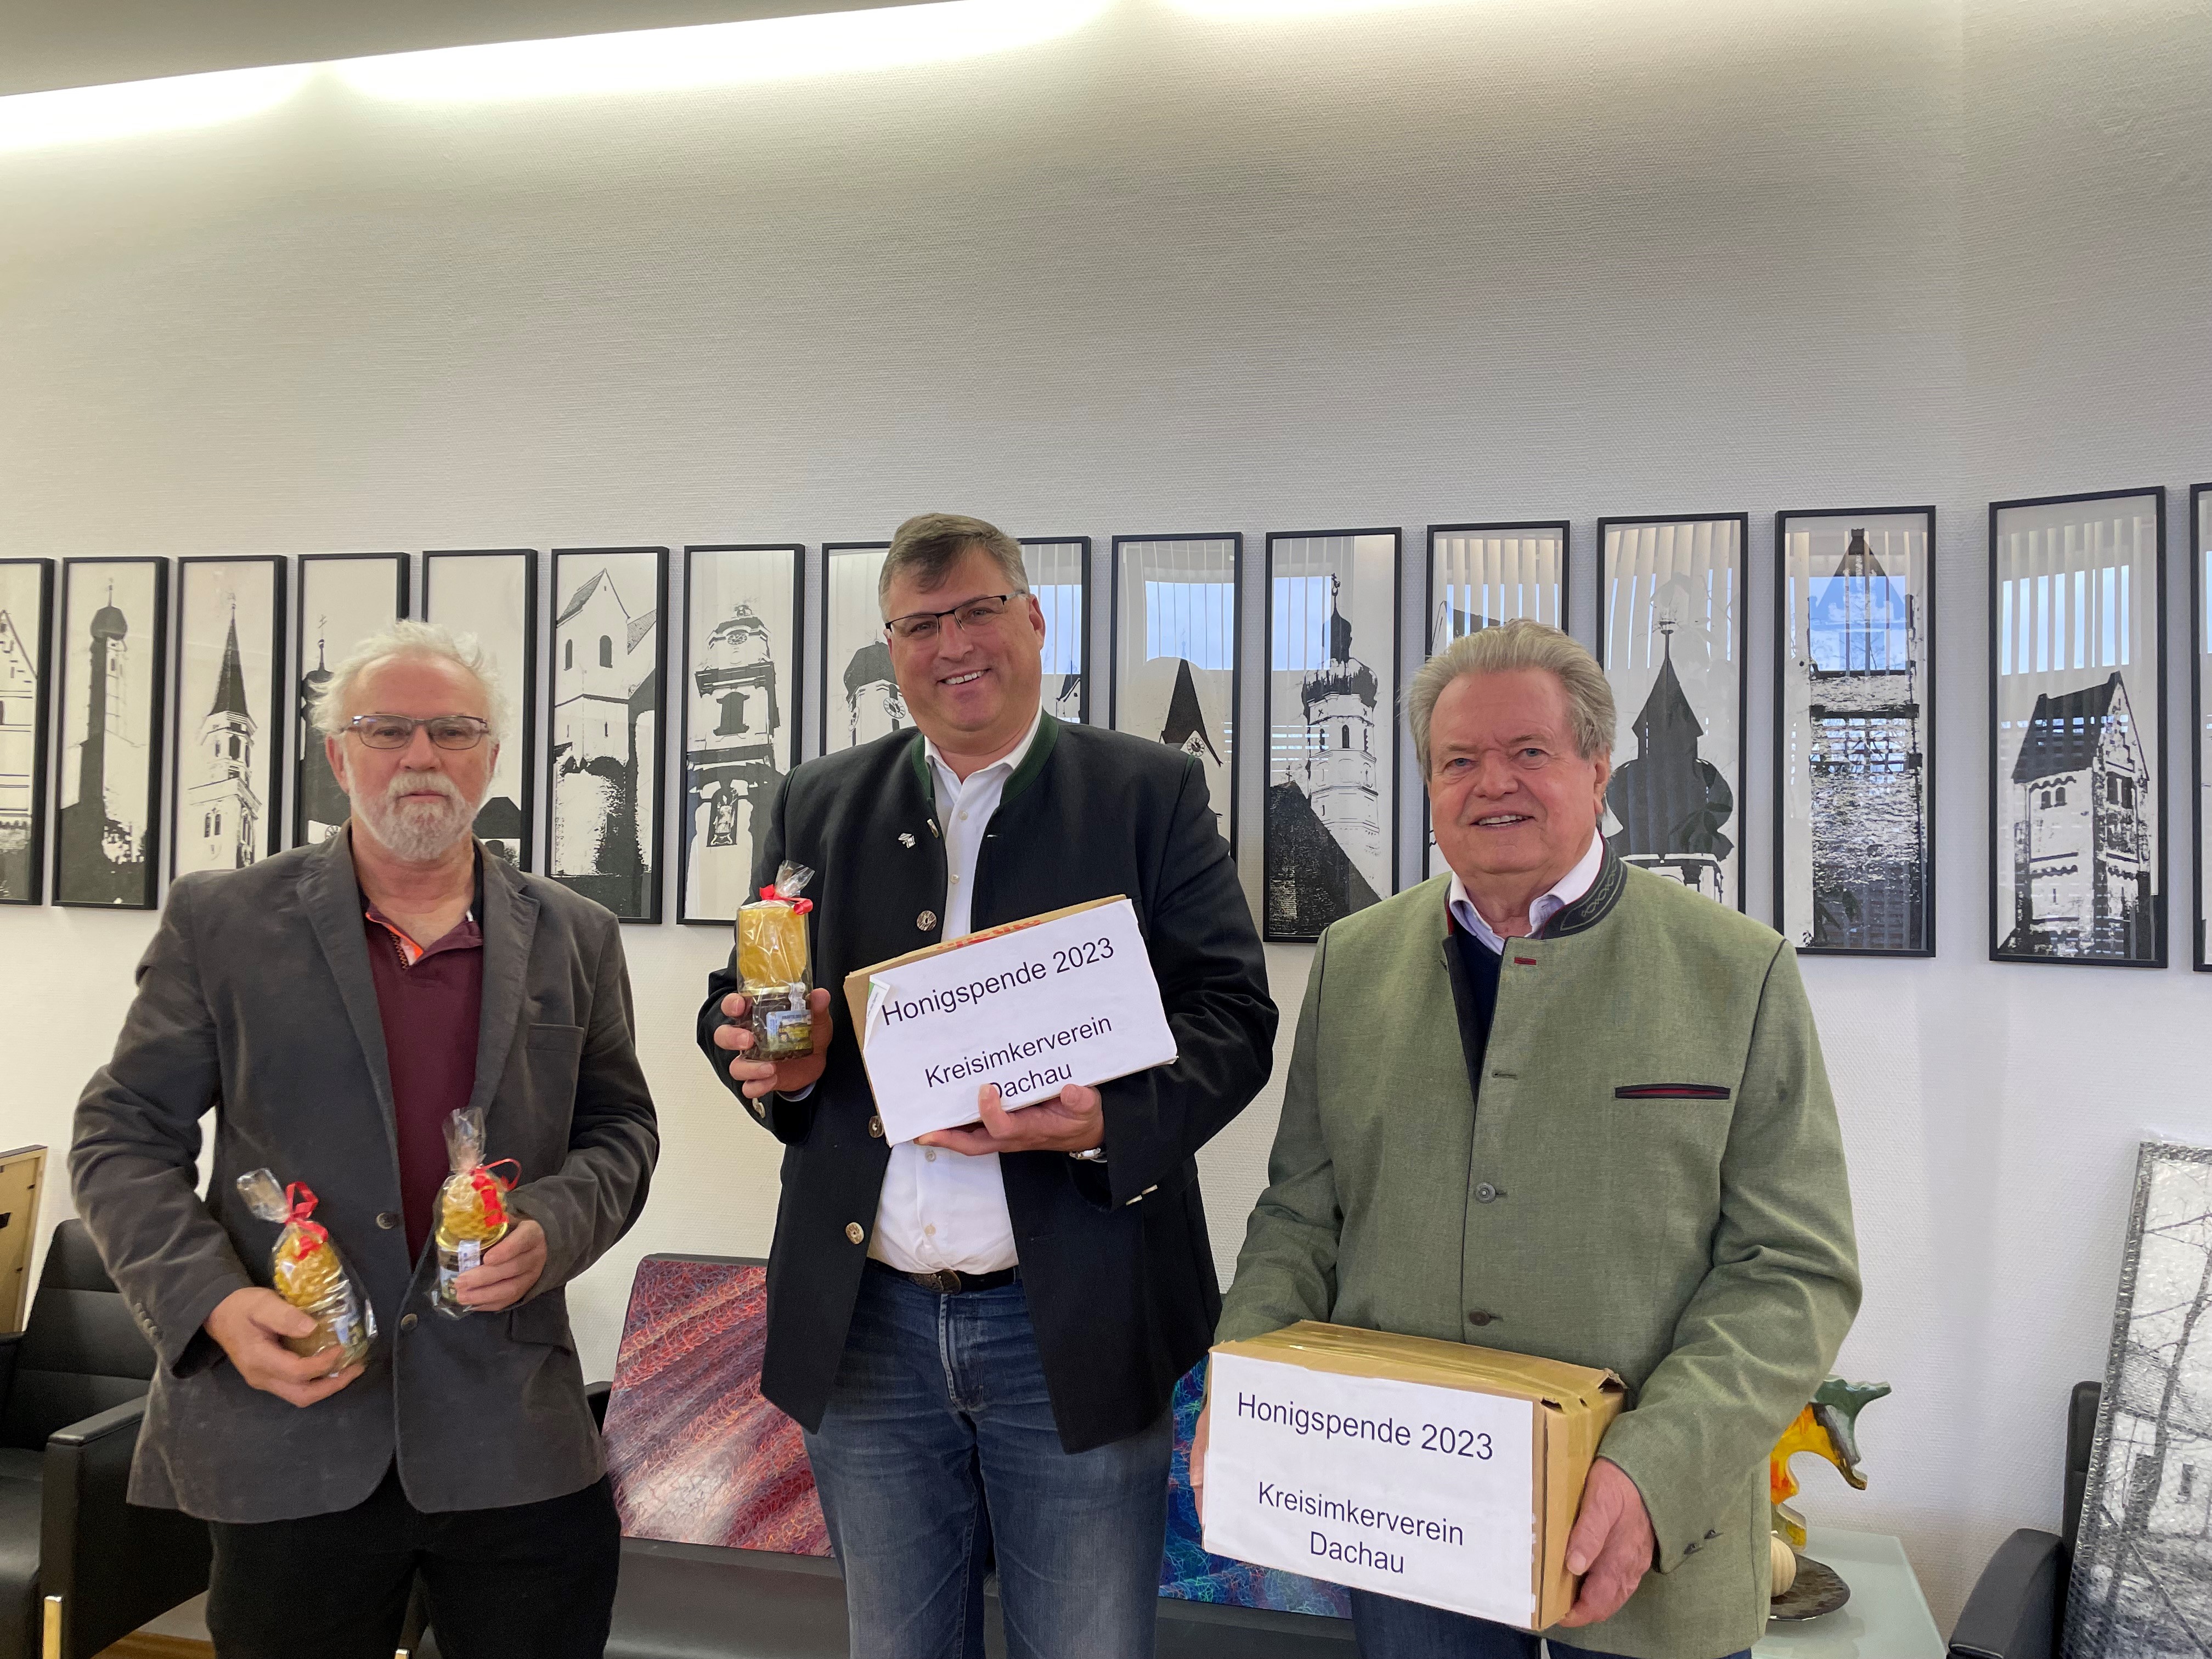 Übergabe der Honigspende des Jahres 2023: Walter Niedermeier und Walter Schöttl, Vorstand des Kreisimkerverein Dachau. Bei der Übergabe des Honigs aus dem Jahr 2023